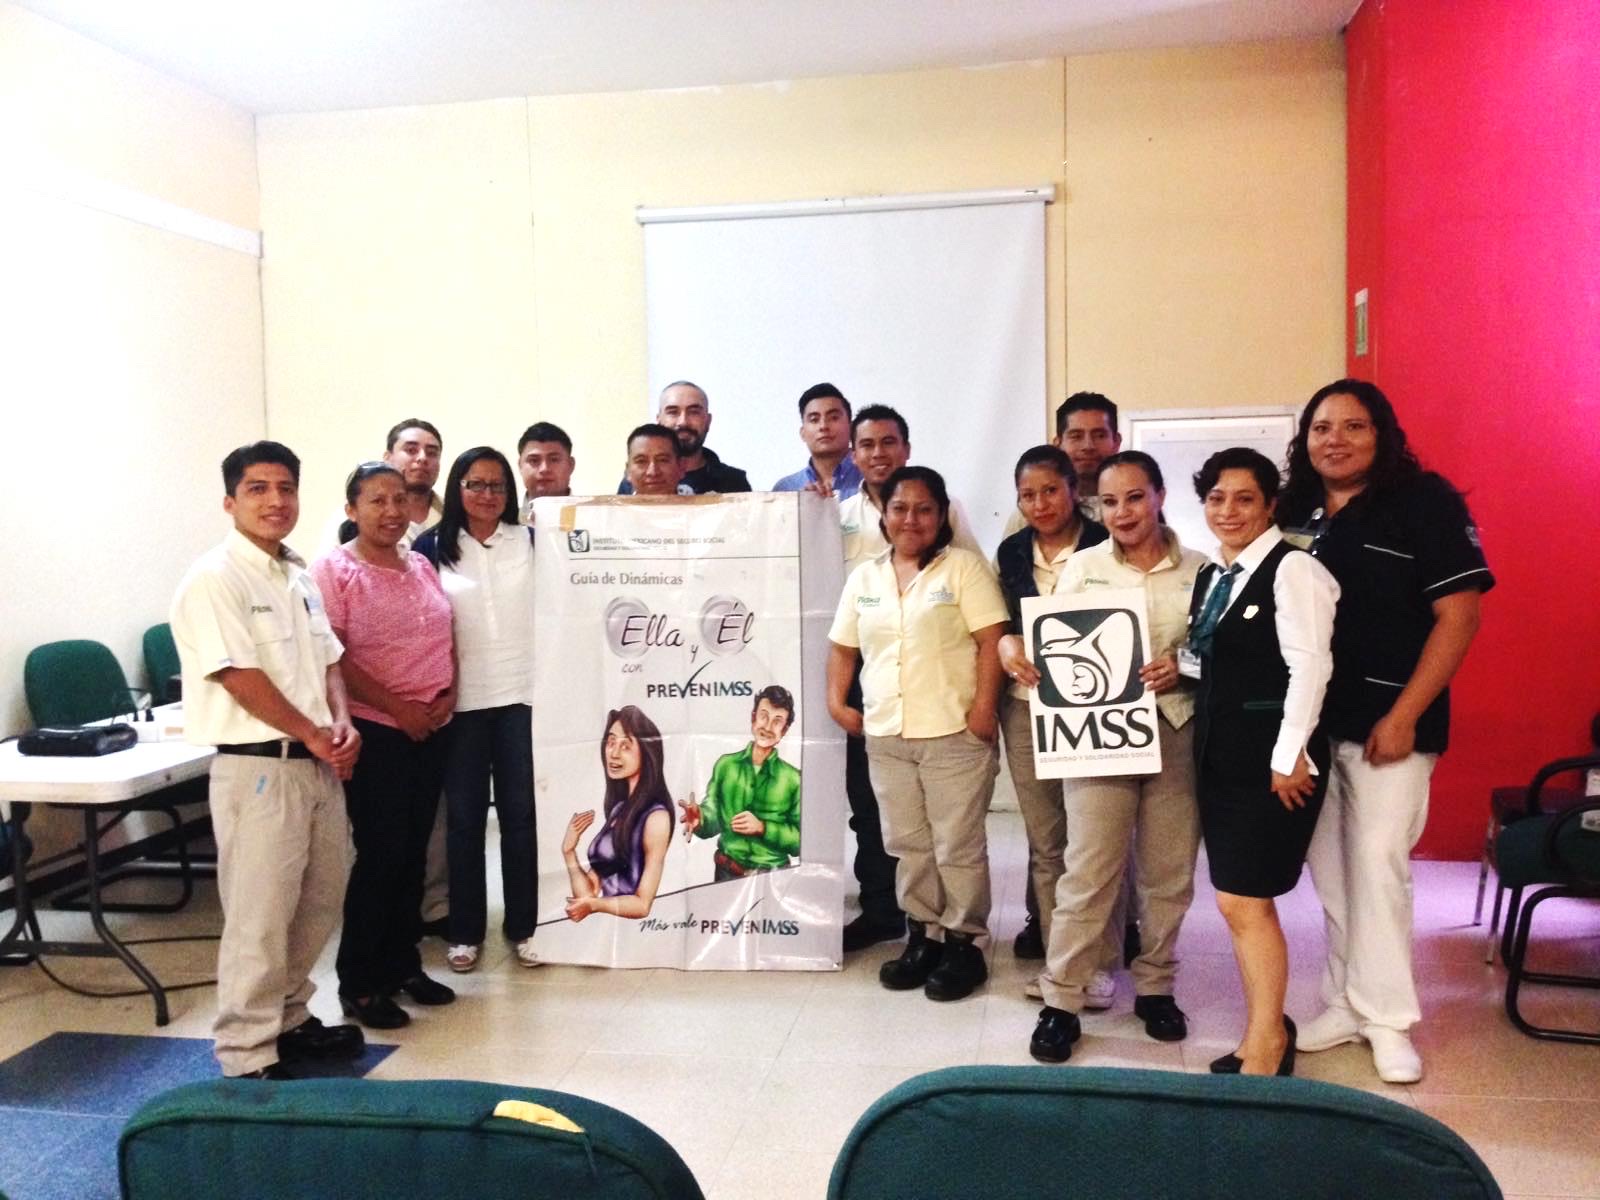 Ofrece IMSS Chiapas beneficios con estrategia educativa “Ella y él”